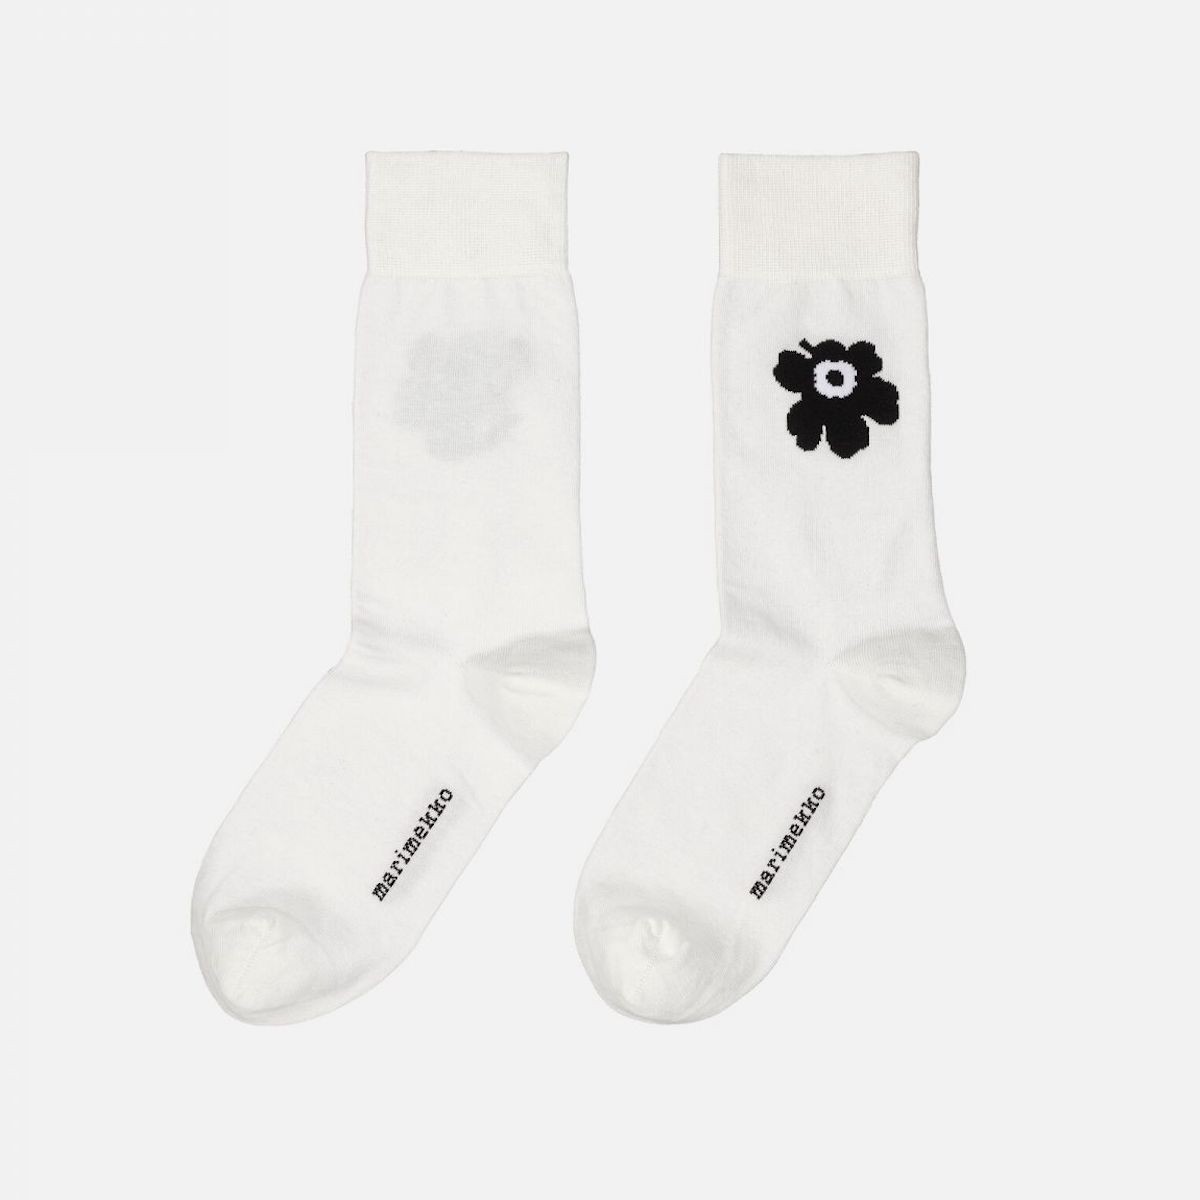 Kasvaa Unikko One - 019 - Marimekko socks